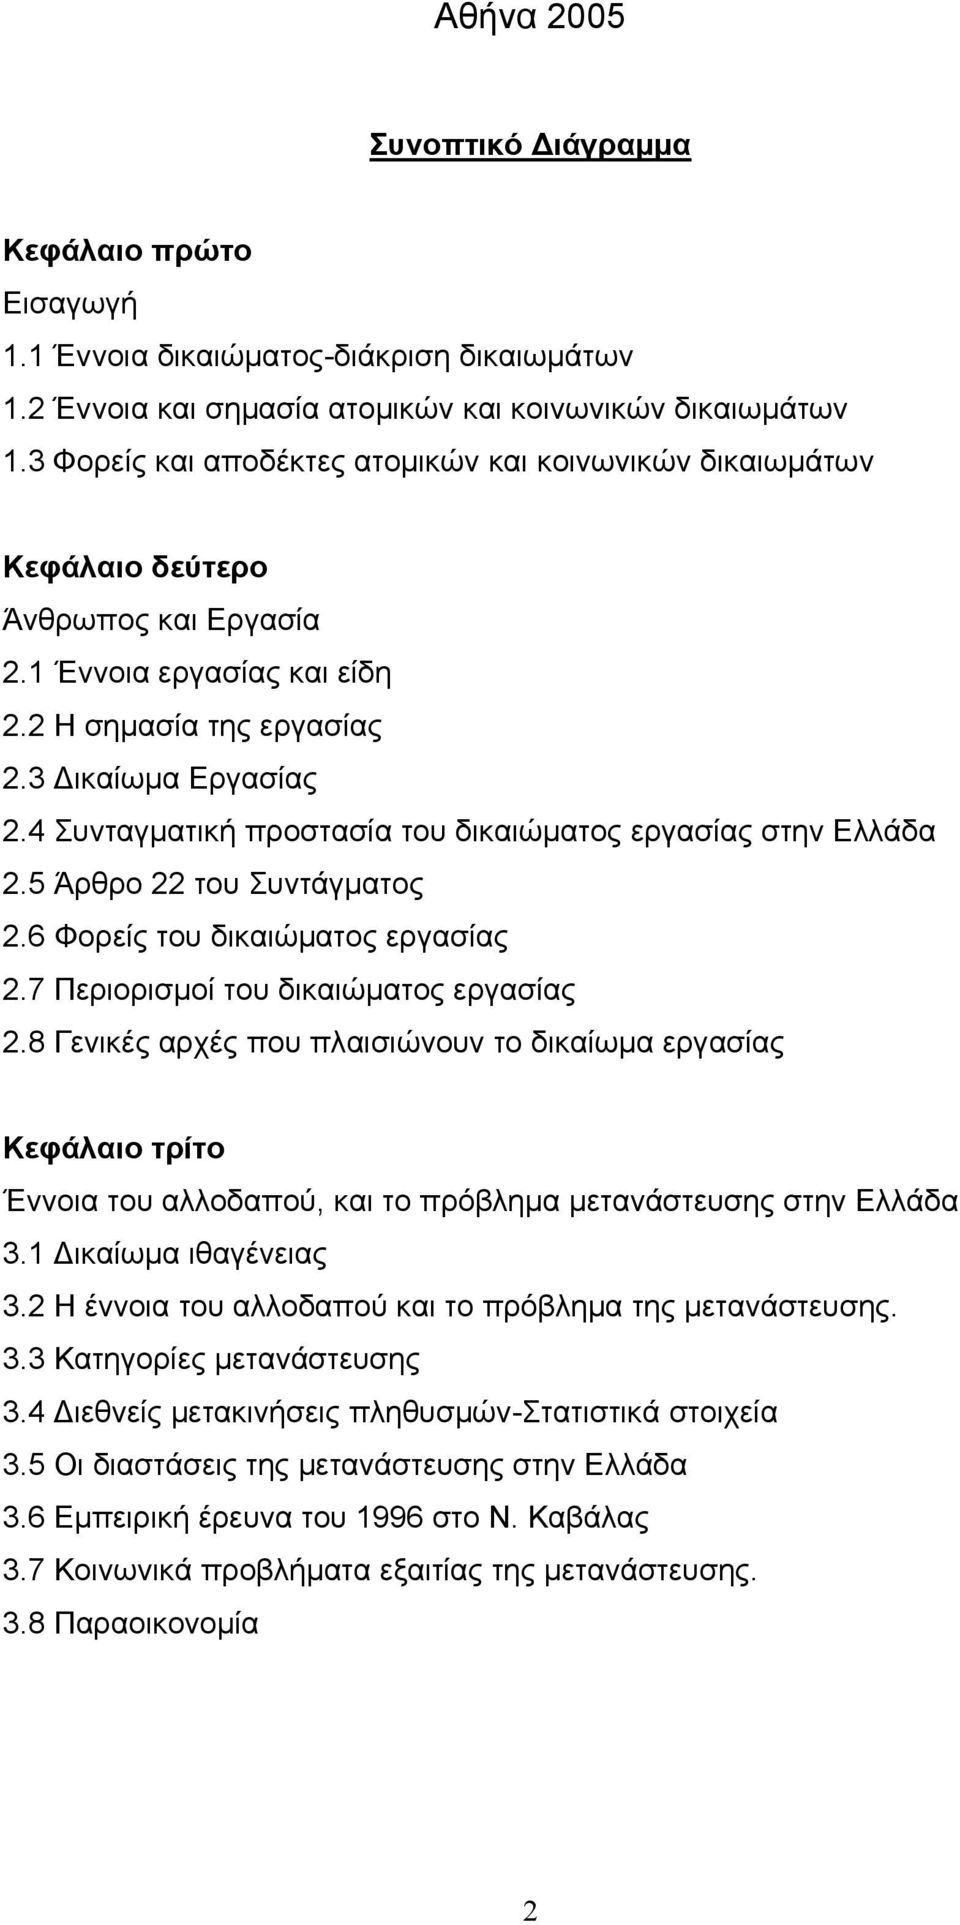 4 Συνταγματική προστασία του δικαιώματος εργασίας στην Ελλάδα 2.5 Άρθρο 22 του Συντάγματος 2.6 Φορείς του δικαιώματος εργασίας 2.7 Περιορισμοί του δικαιώματος εργασίας 2.